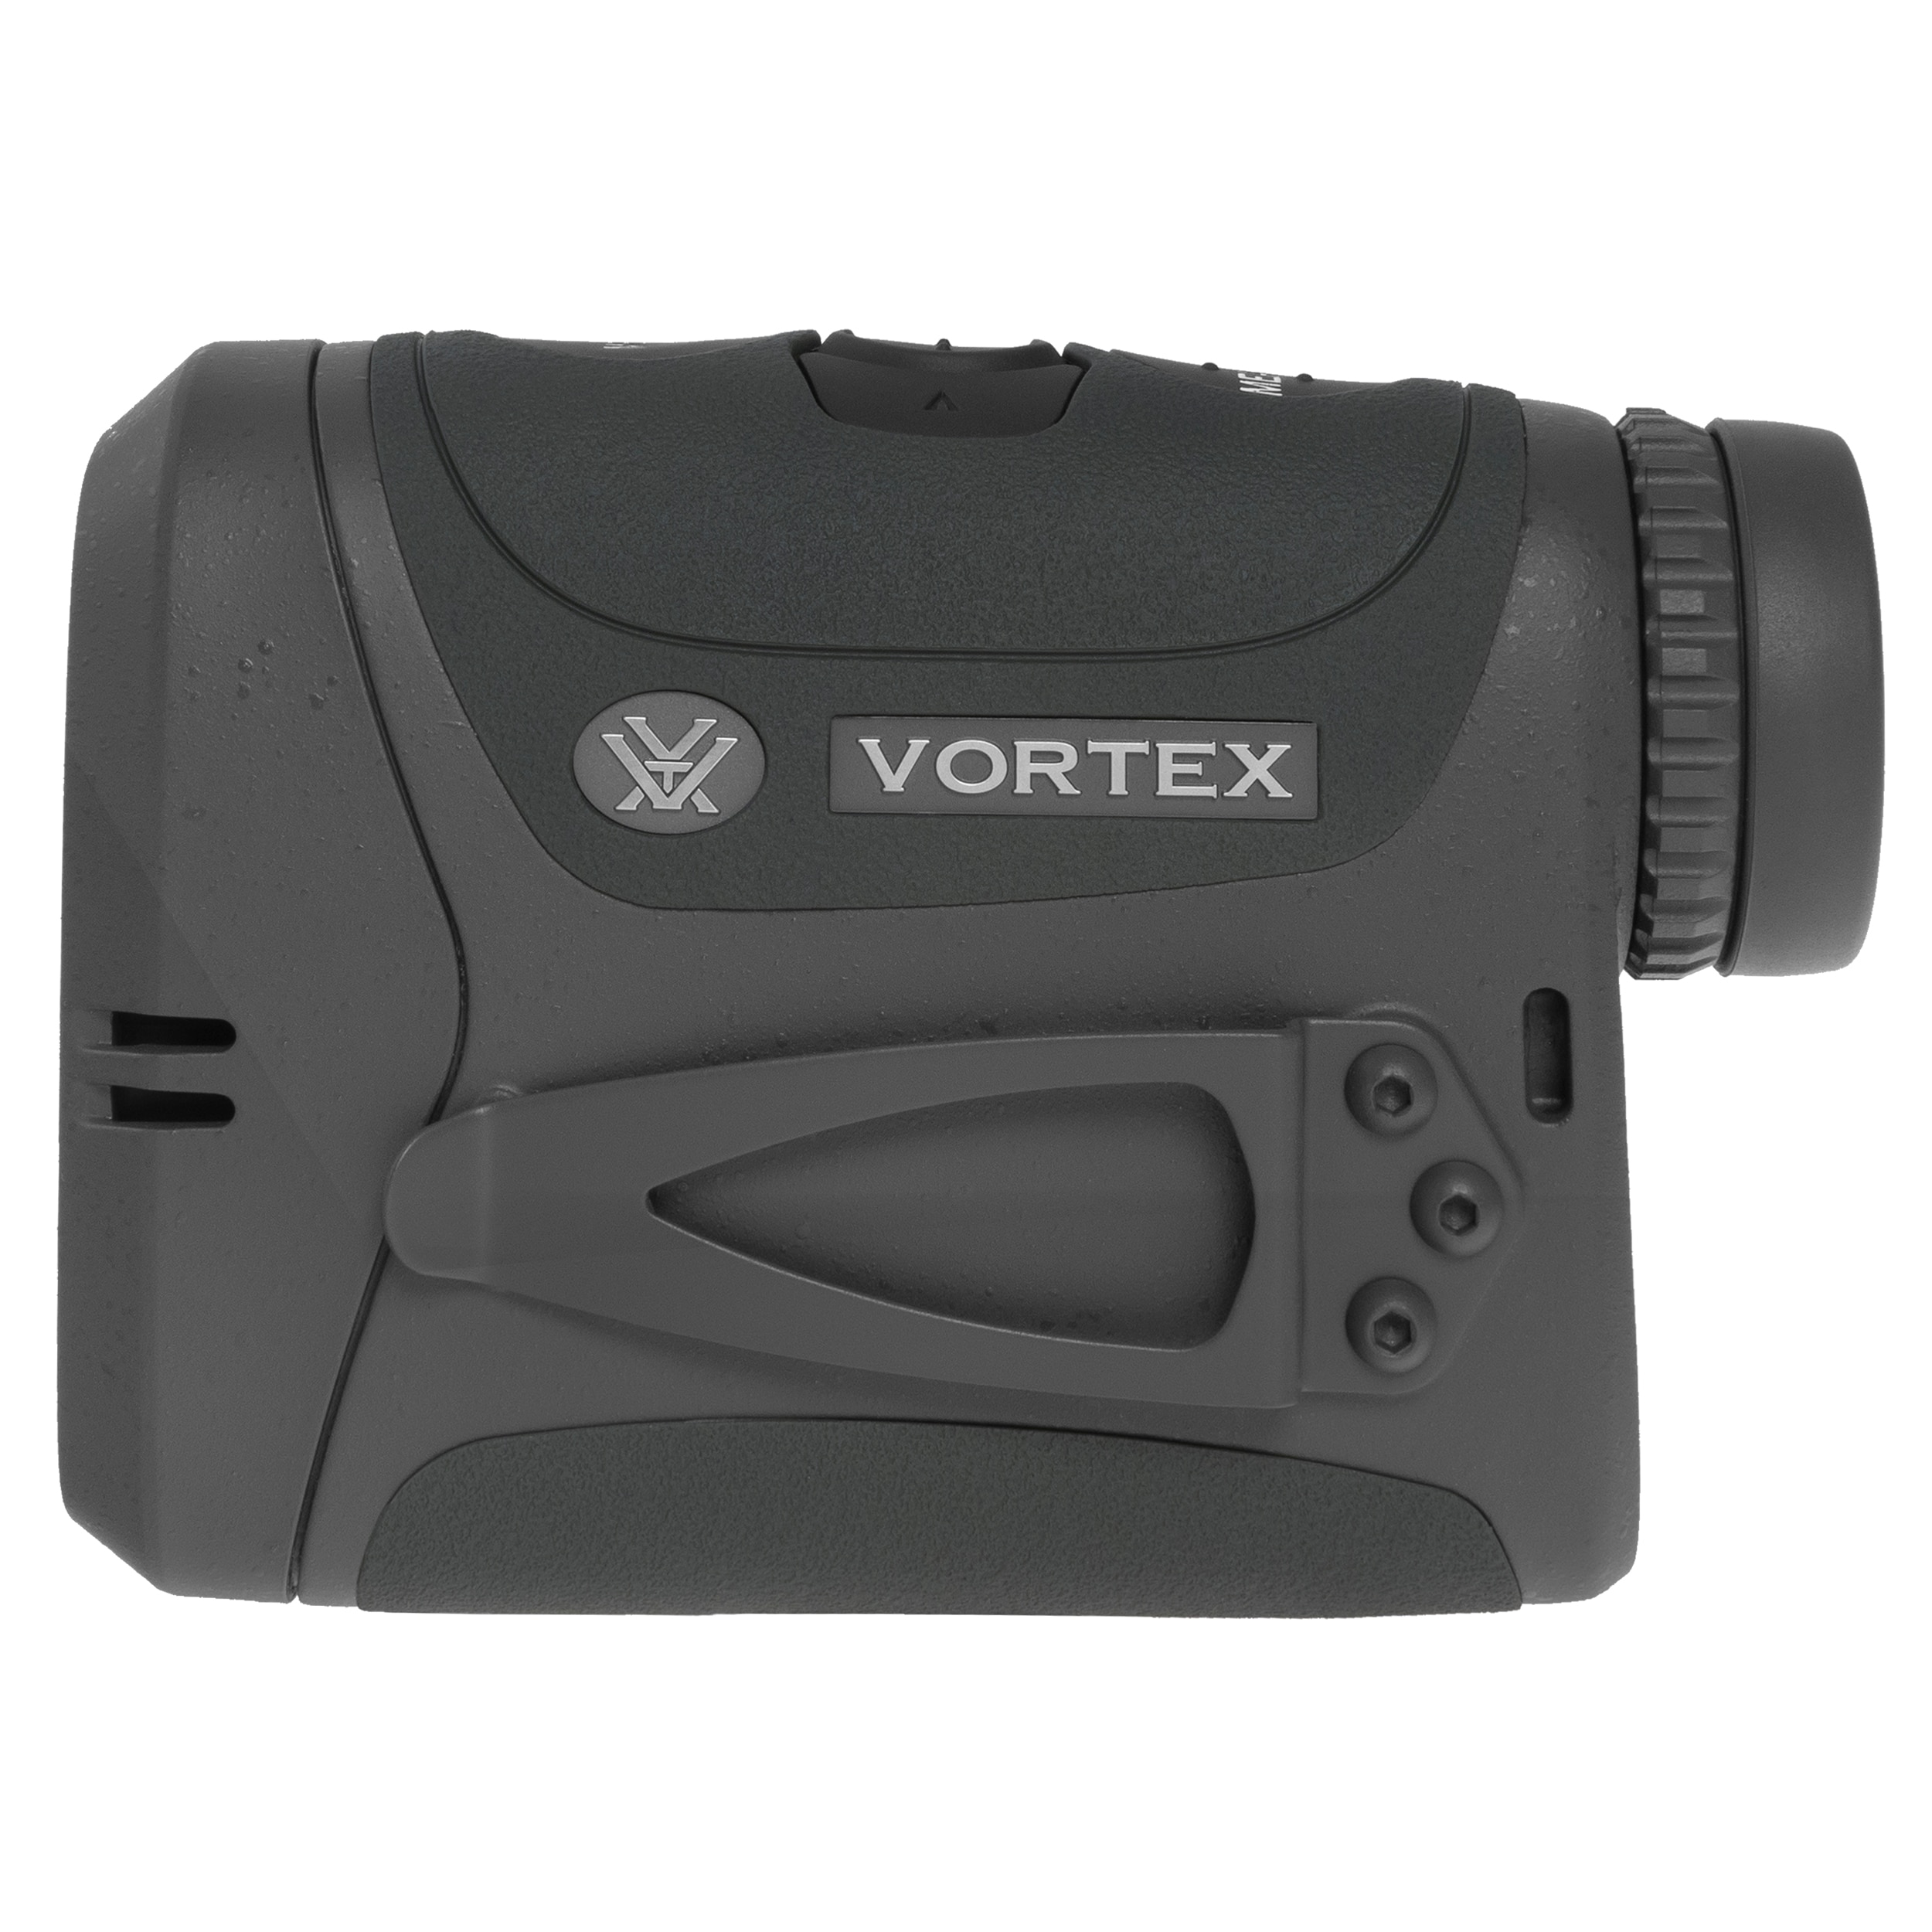 Лазерний далекомір Vortex Razor HD4000 GB